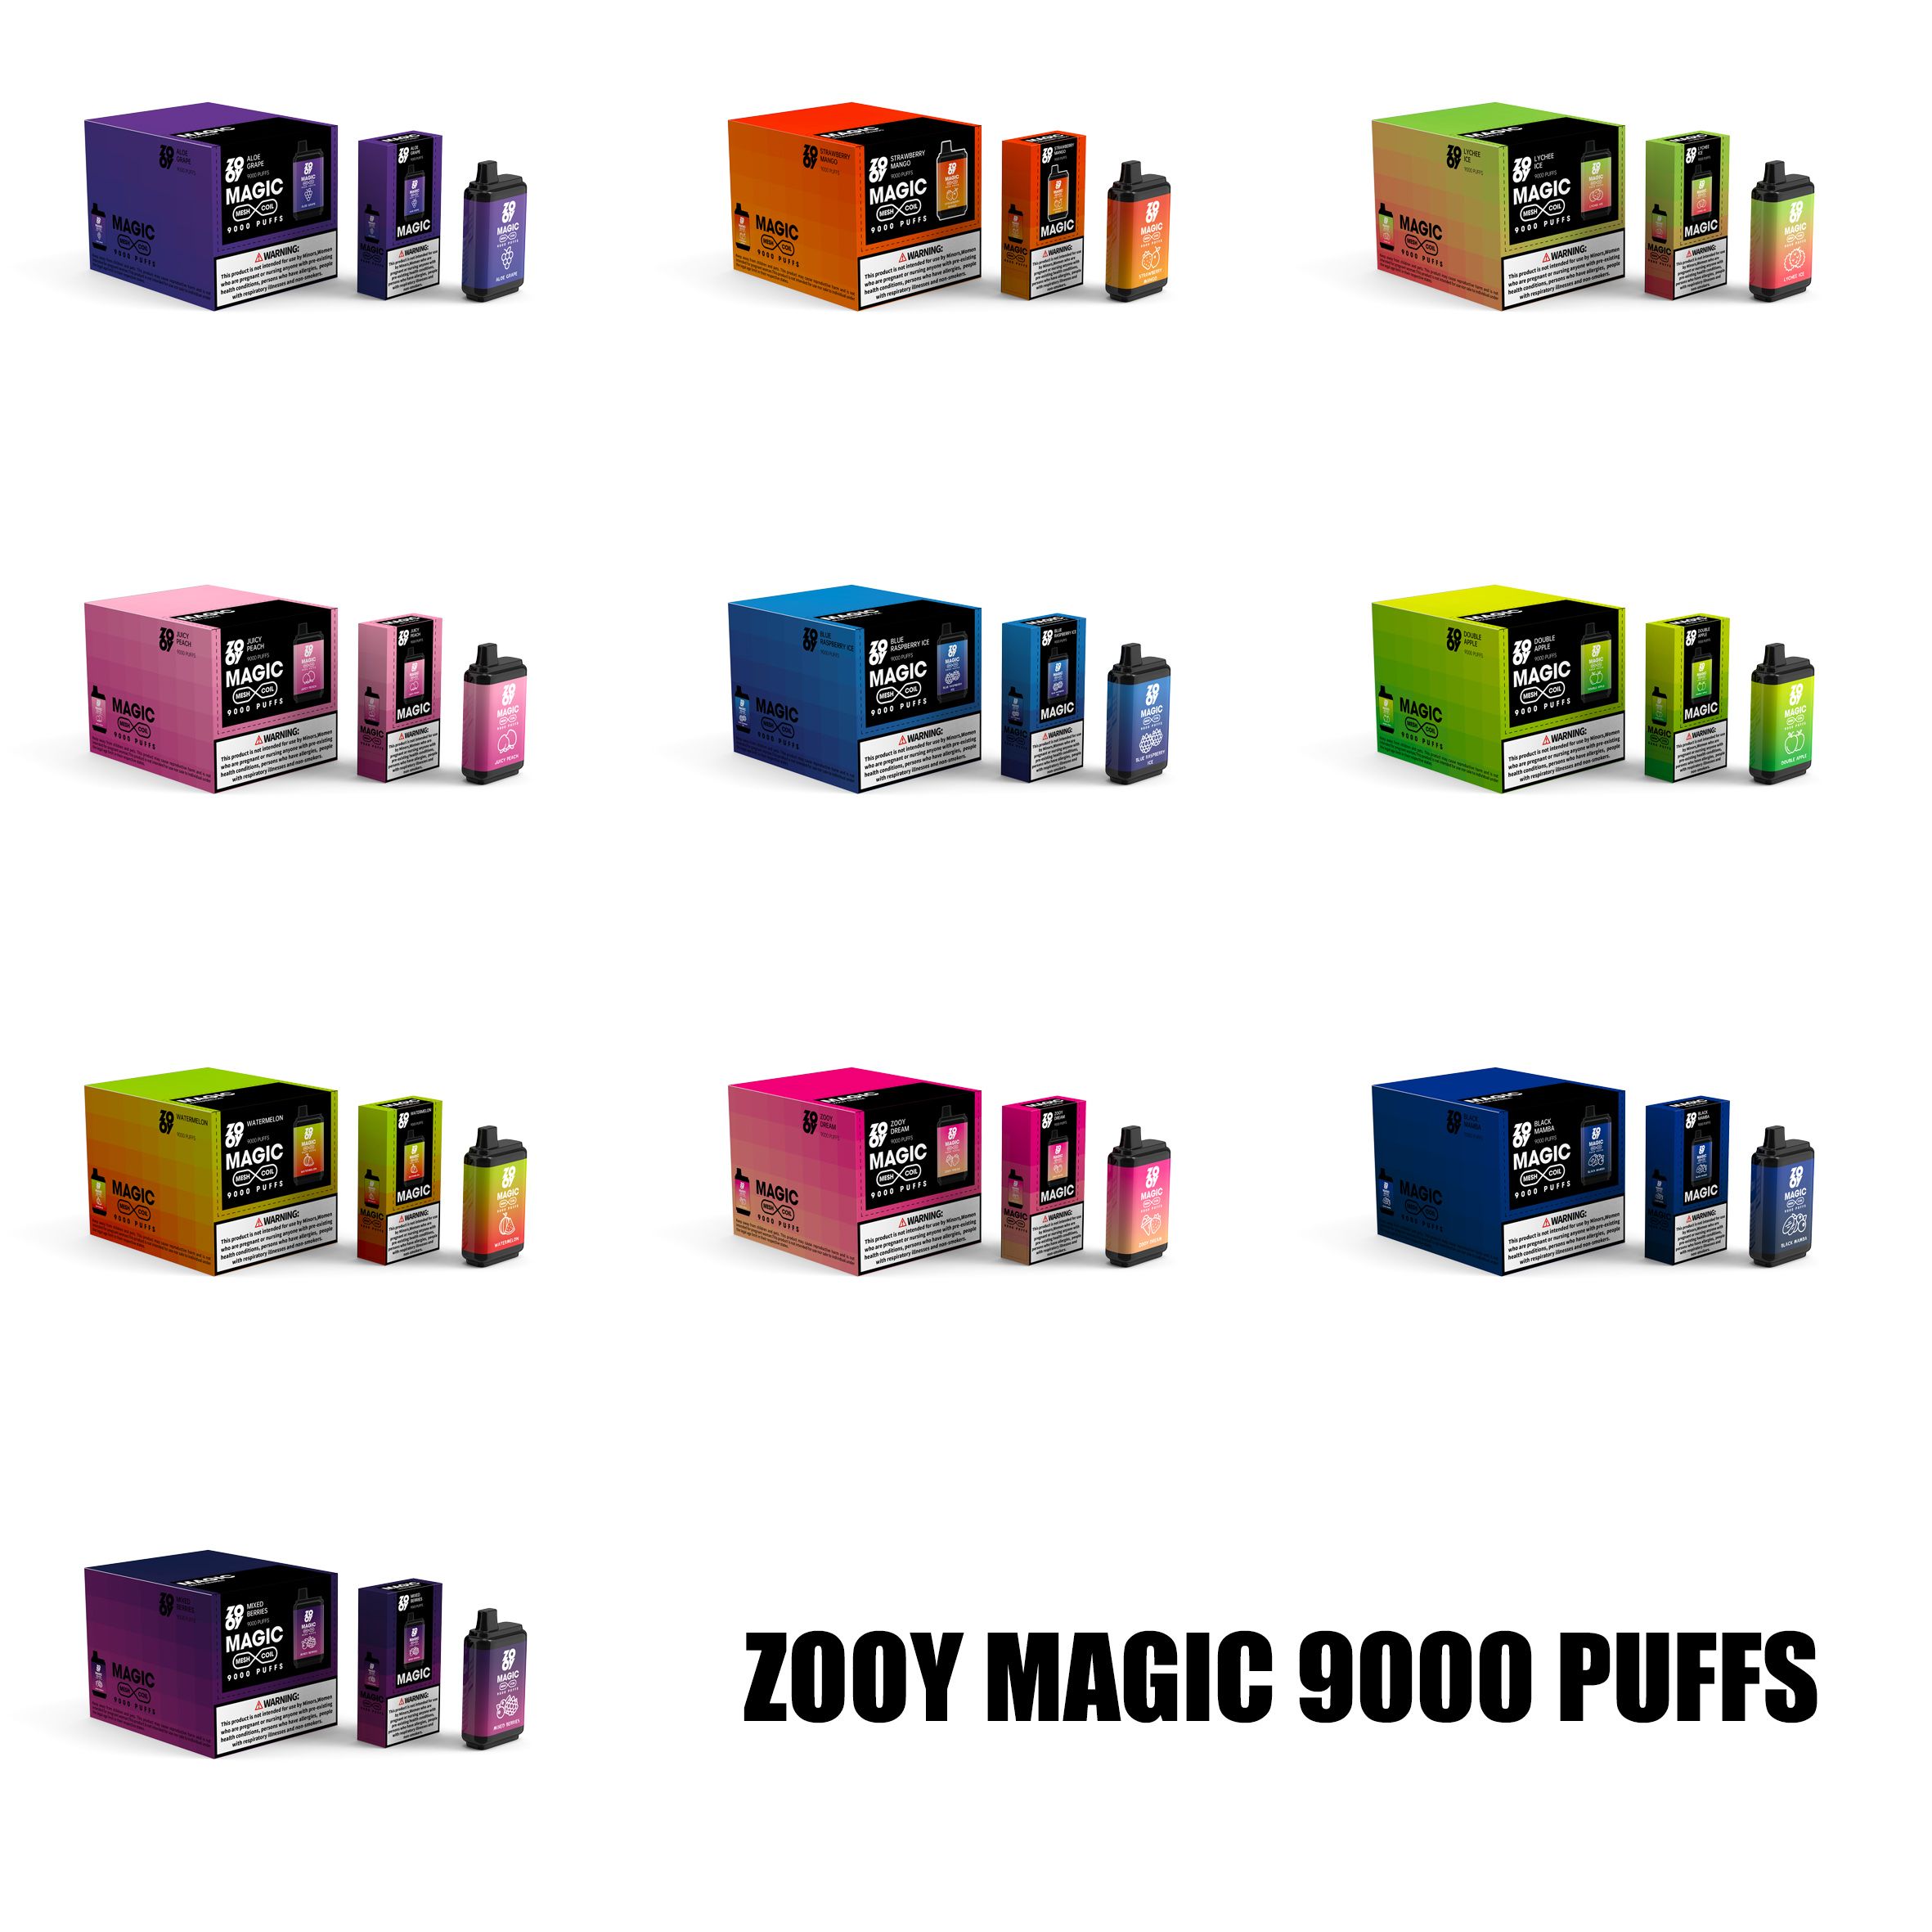 Zooy MAGIC 9000 saveurs mélangées